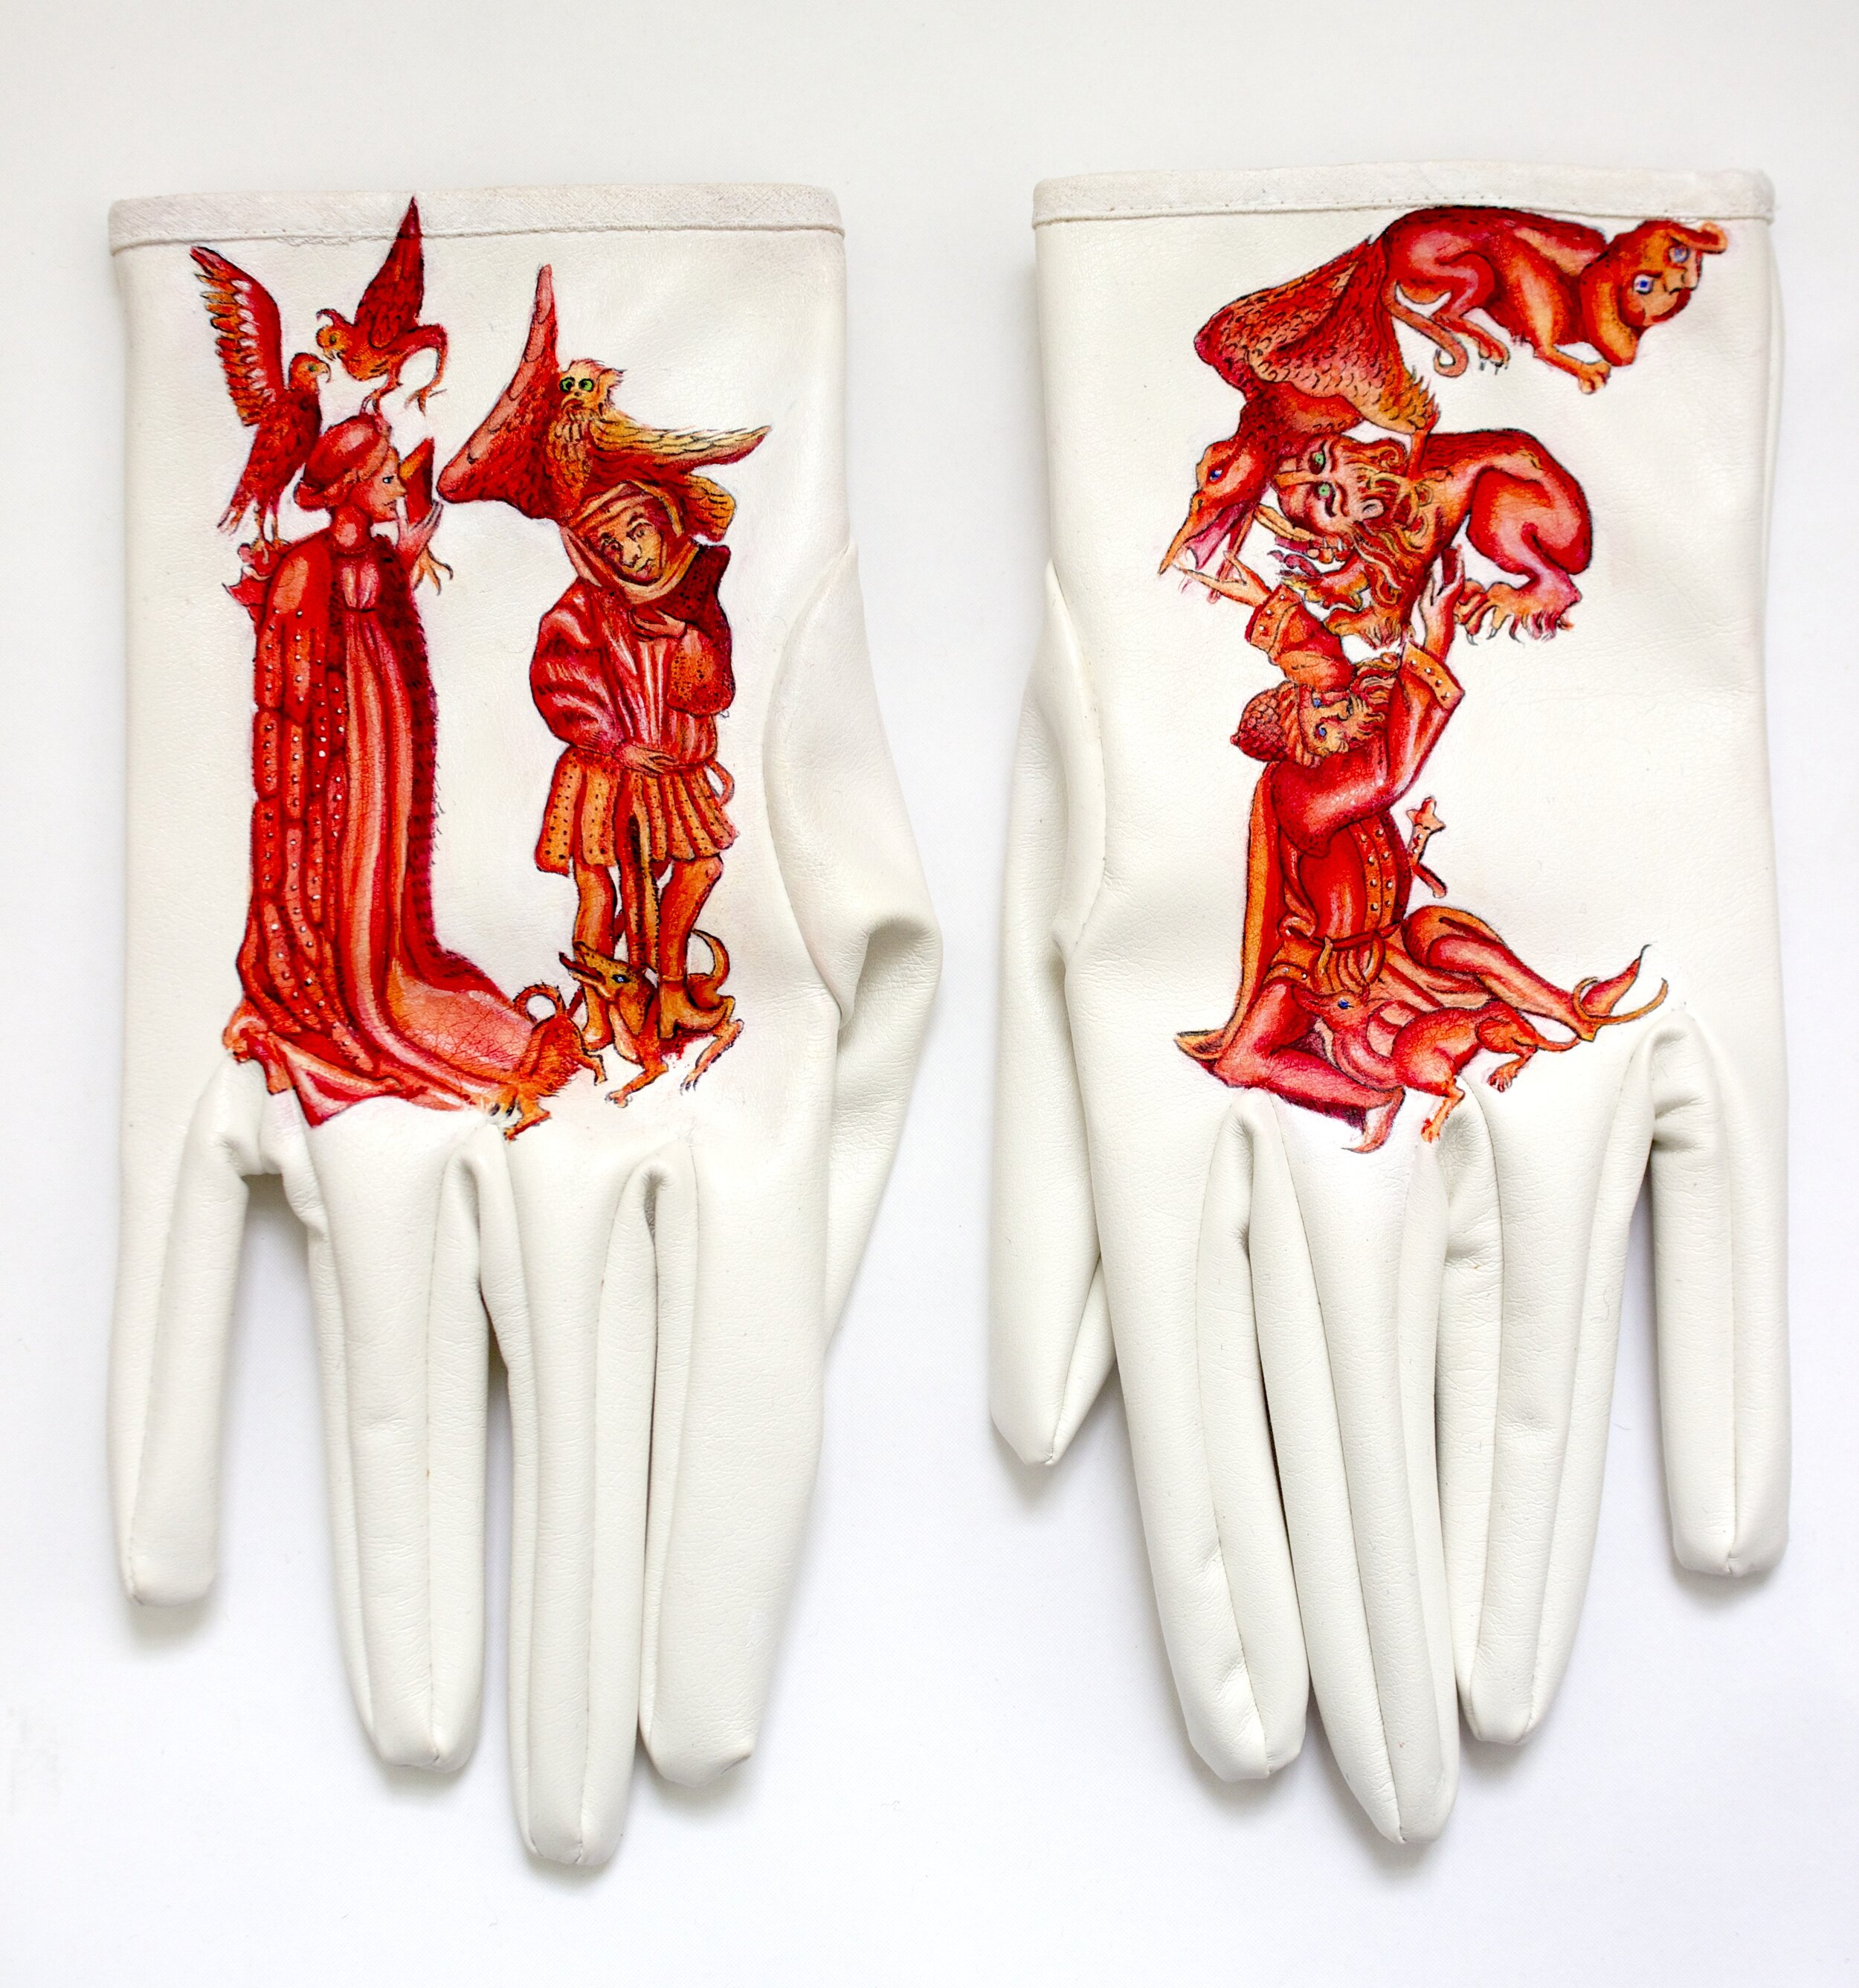 'D.F Gloves,' 2019